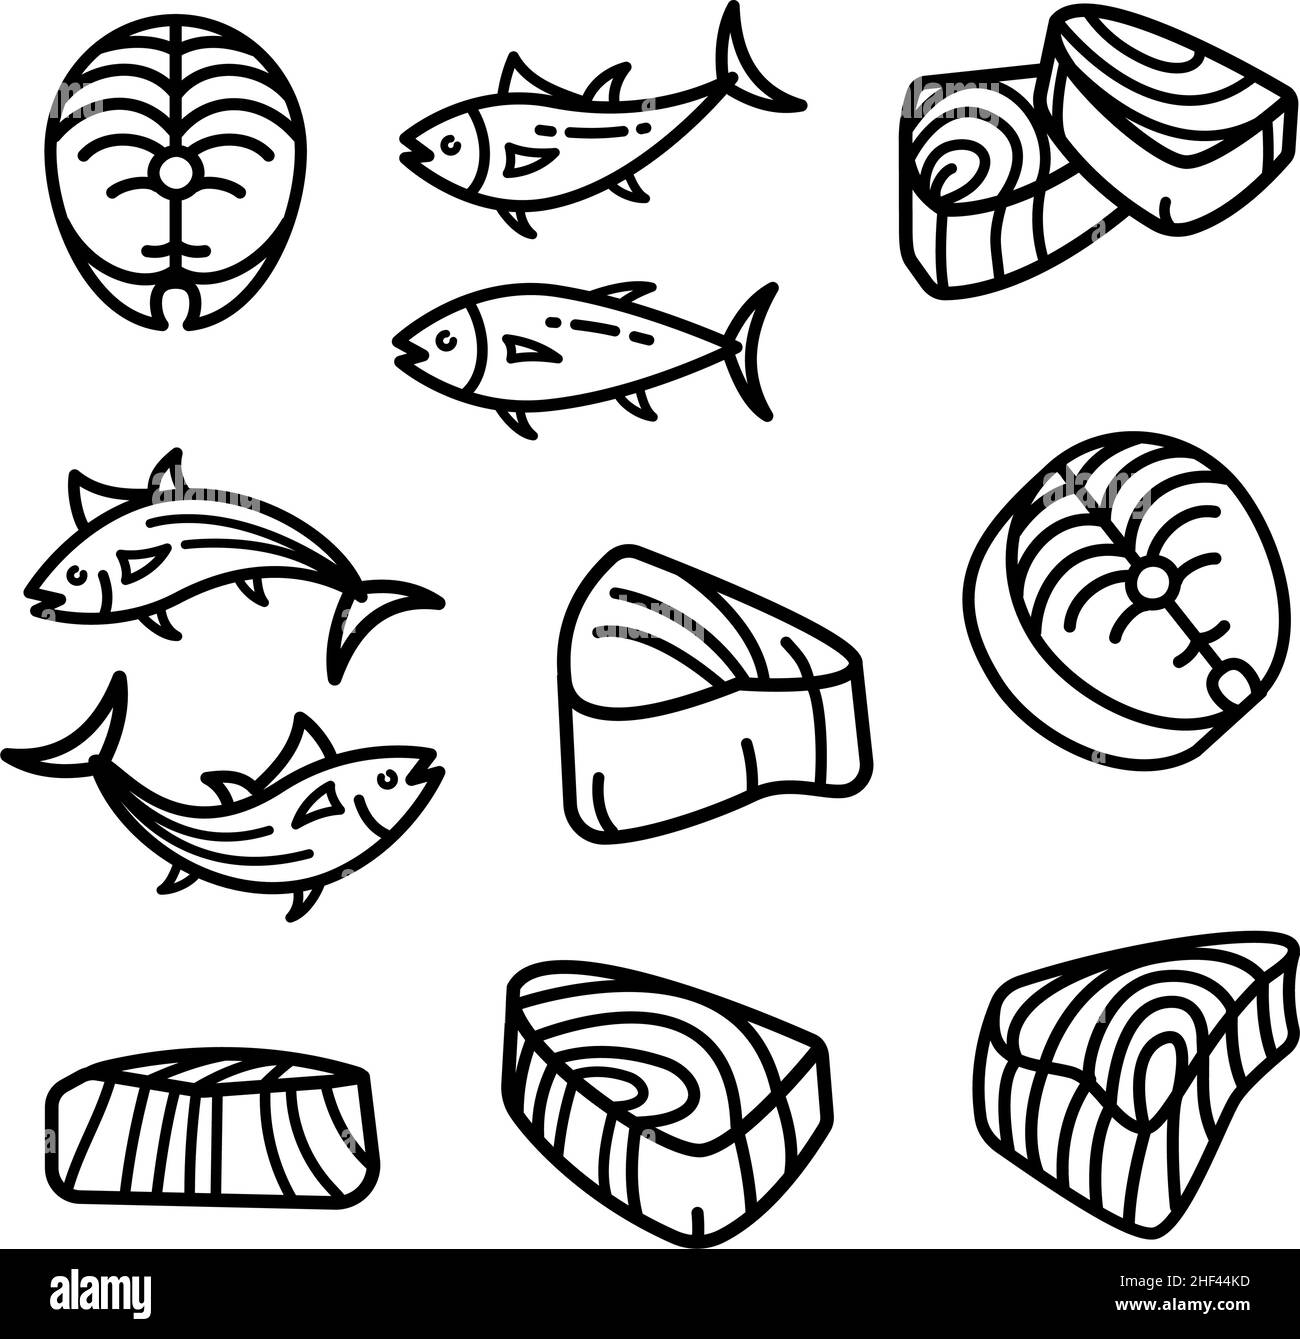 Symbole für den Thunfisch-Umriss gesetzt. Vektor-Icons Sammlung von Thunfisch für Web-Design isoliert auf weißem Hintergrund Stock Vektor